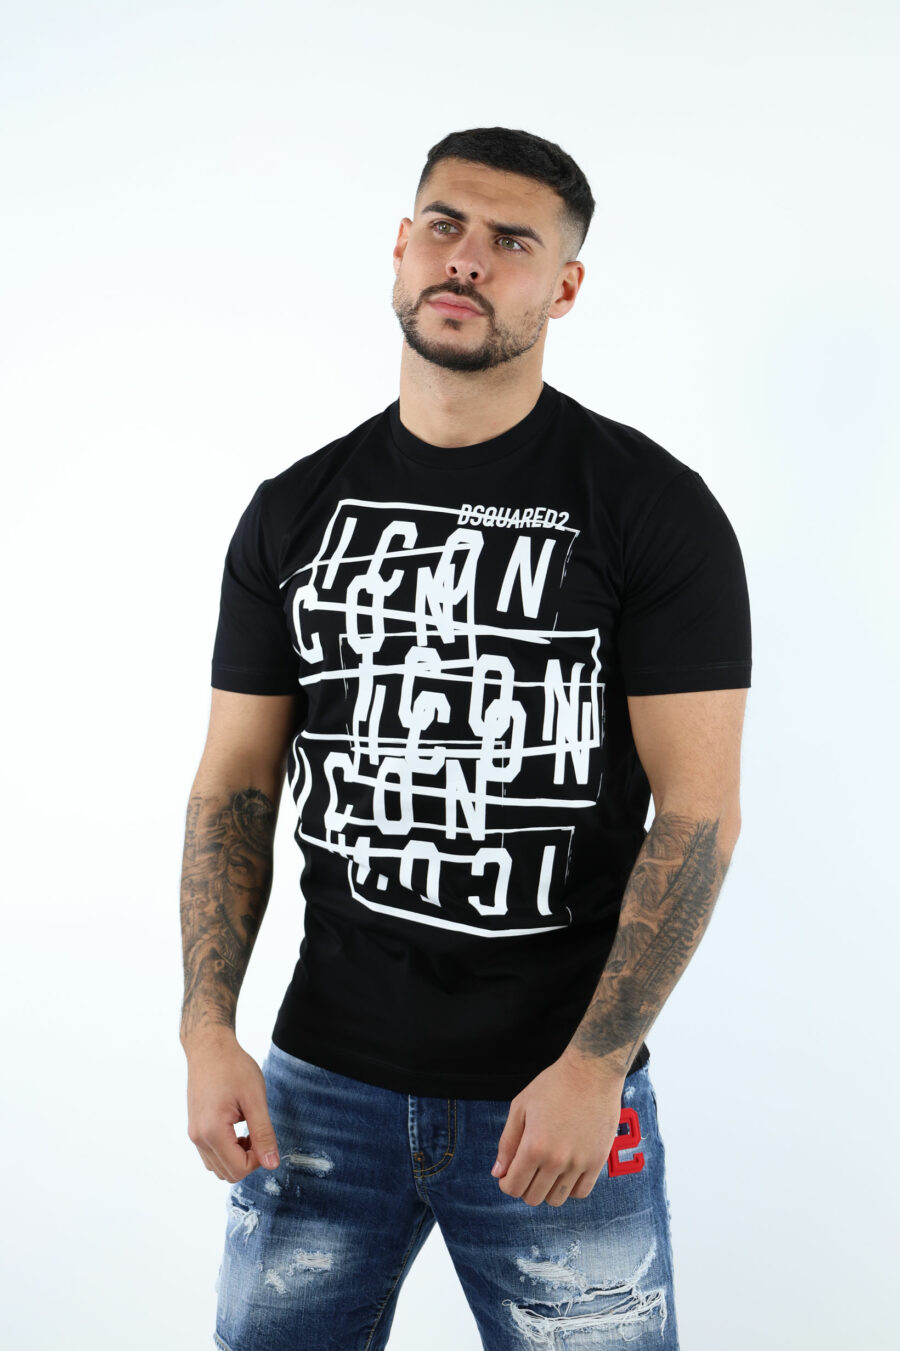 T-shirt preta com carimbos do logótipo "icon" - 106835